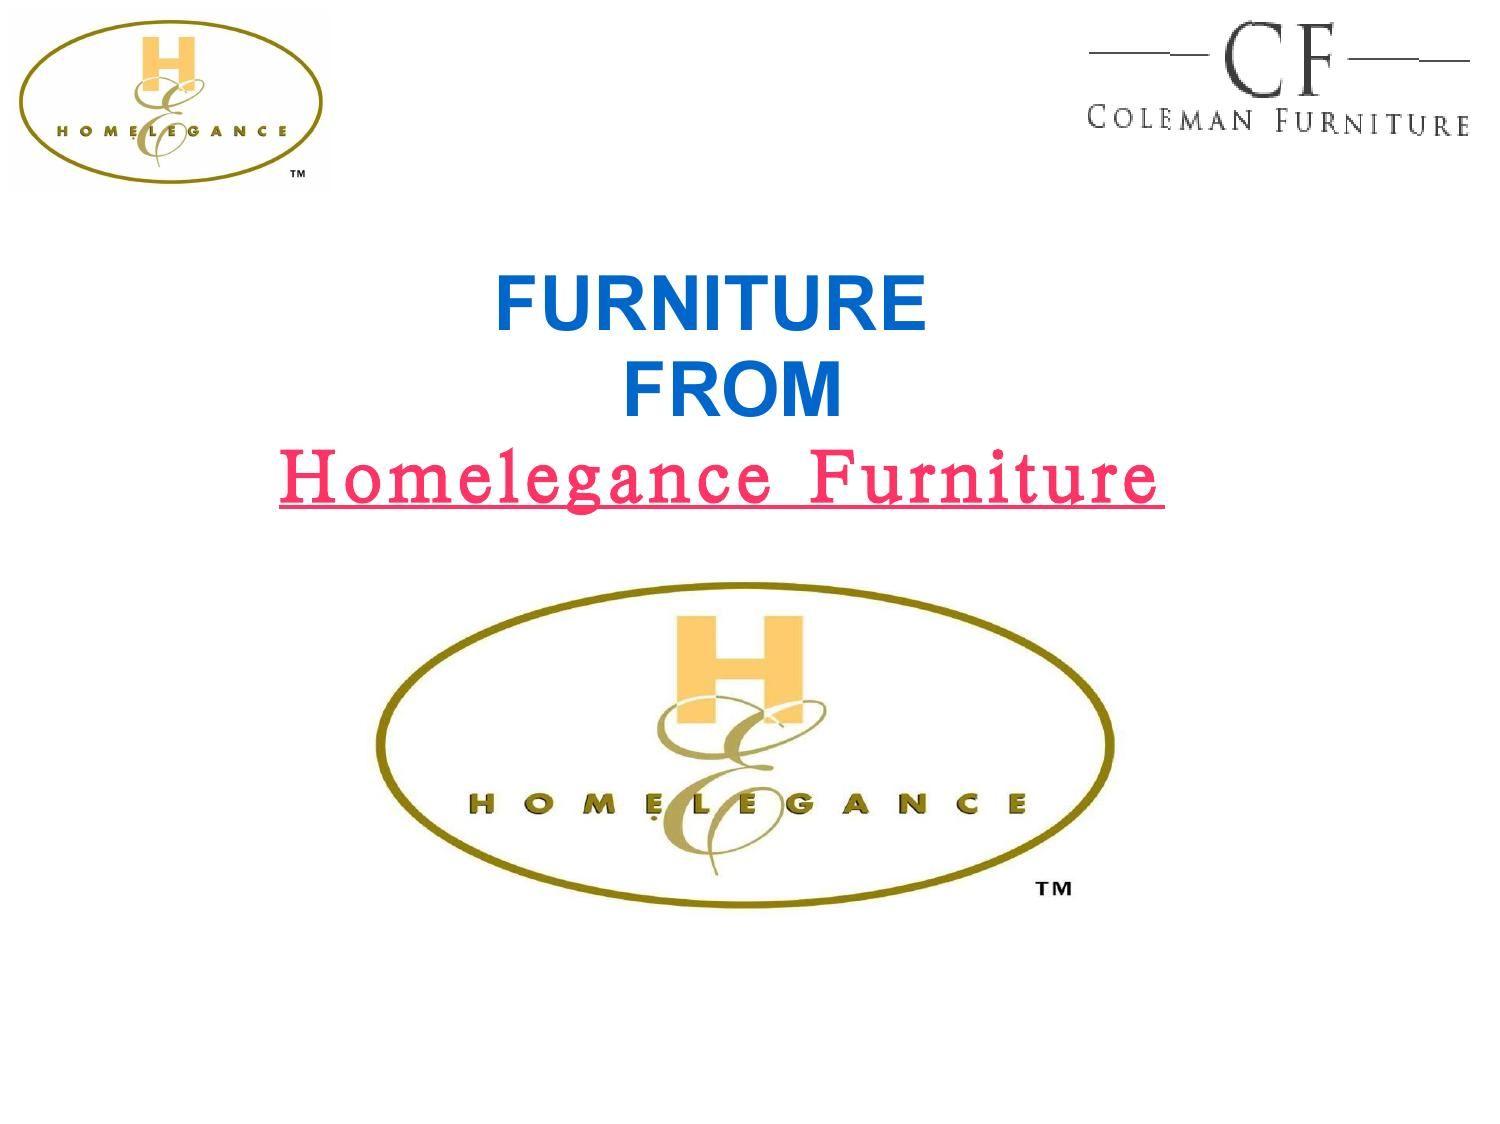 Homelegance Logo - Homelegance Furniture - Coleman Furniture by Coleman Furniture - issuu